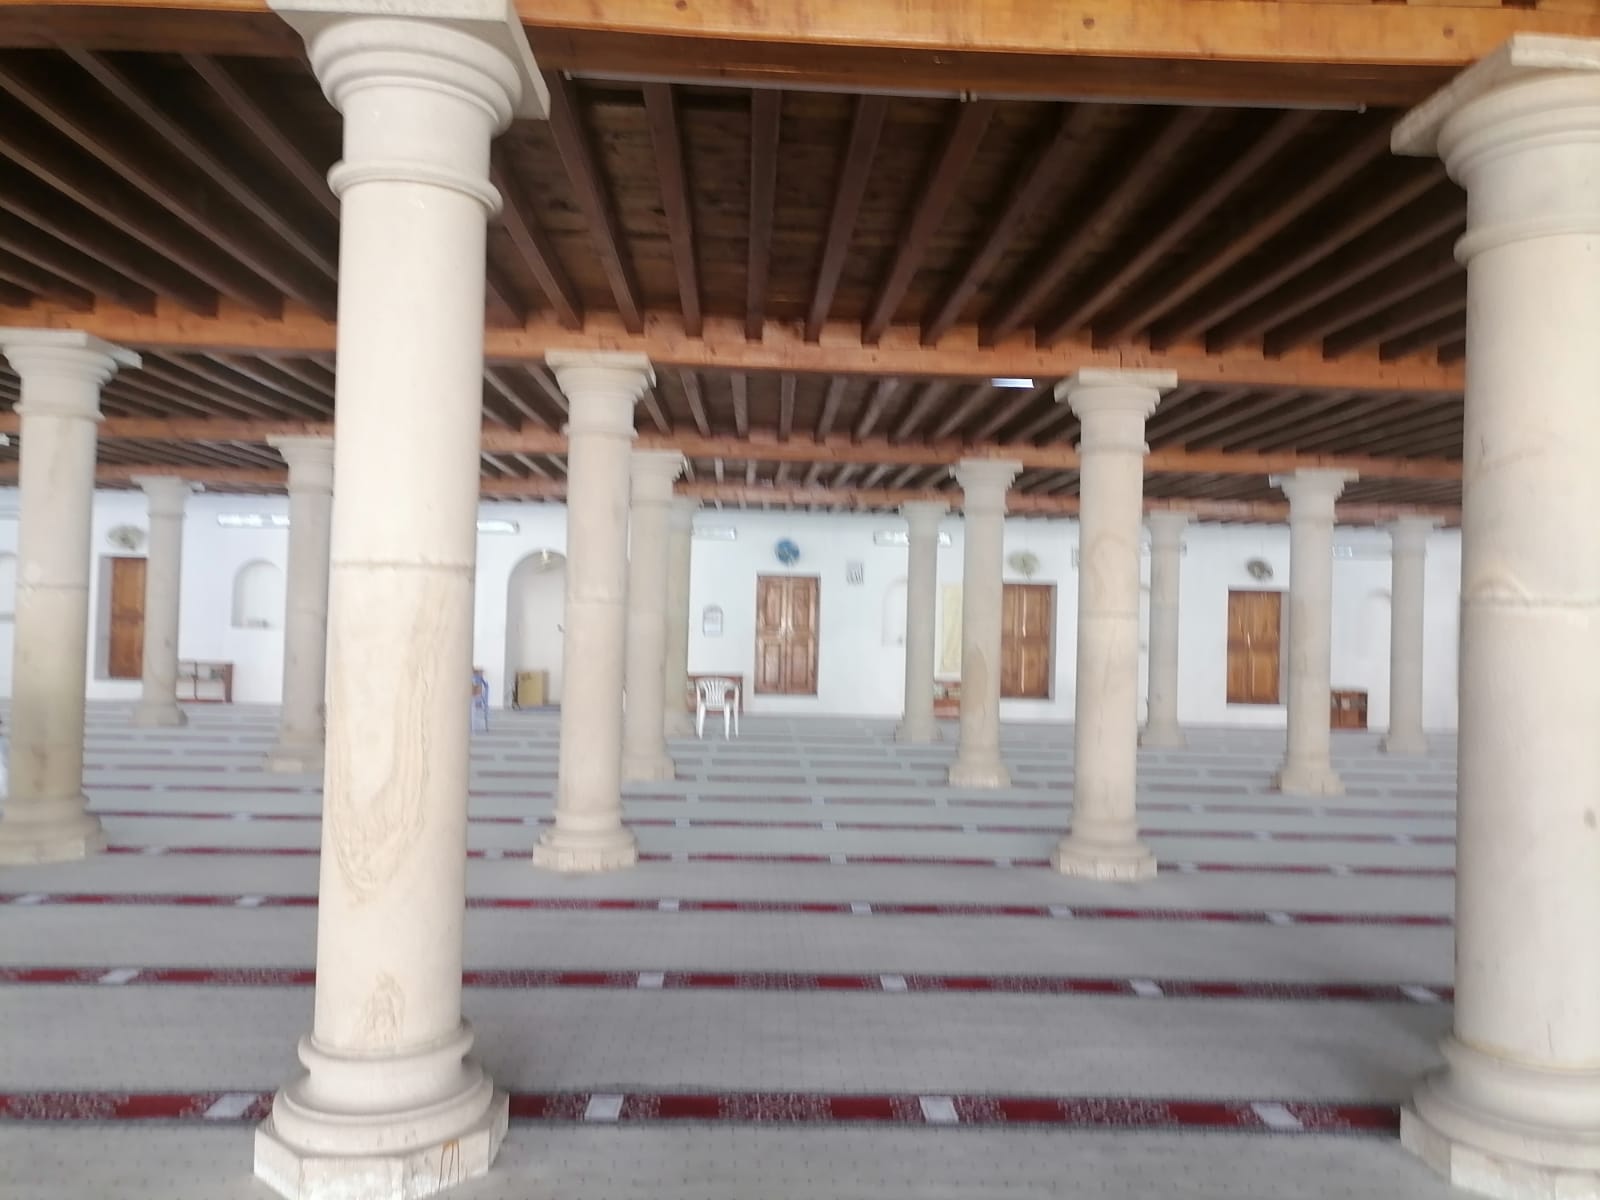 باحة المسجد